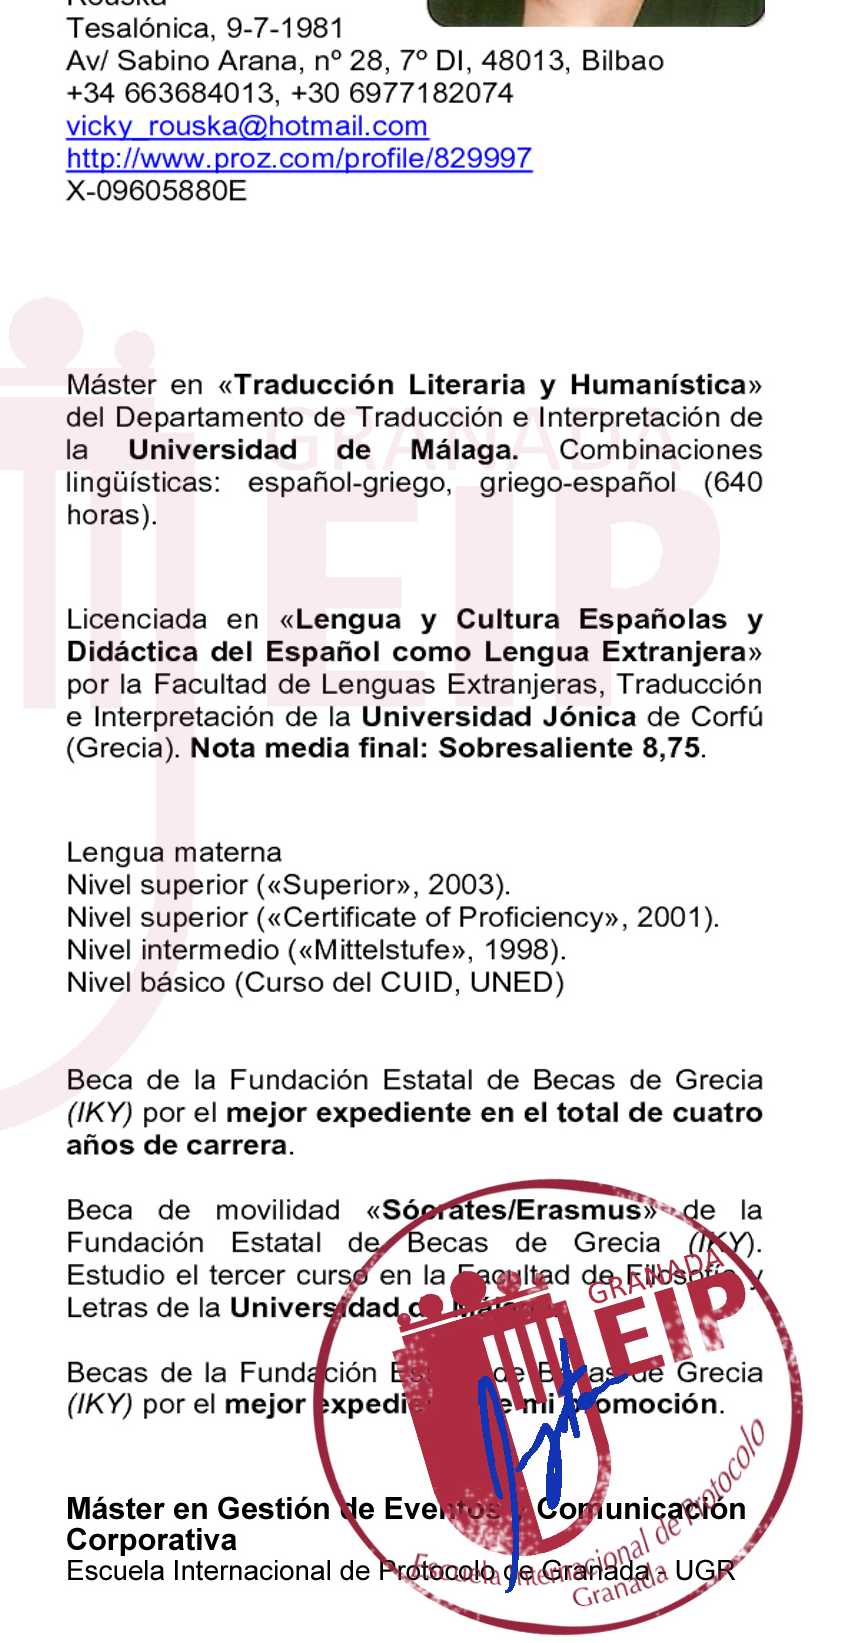 Curriculum Certificado Fruto de la confianza que la Escuela Internacional de Protocolo de Granada tiene en la formación que ofrece, con el respaldo de la Universidad de Granada, y el programa de